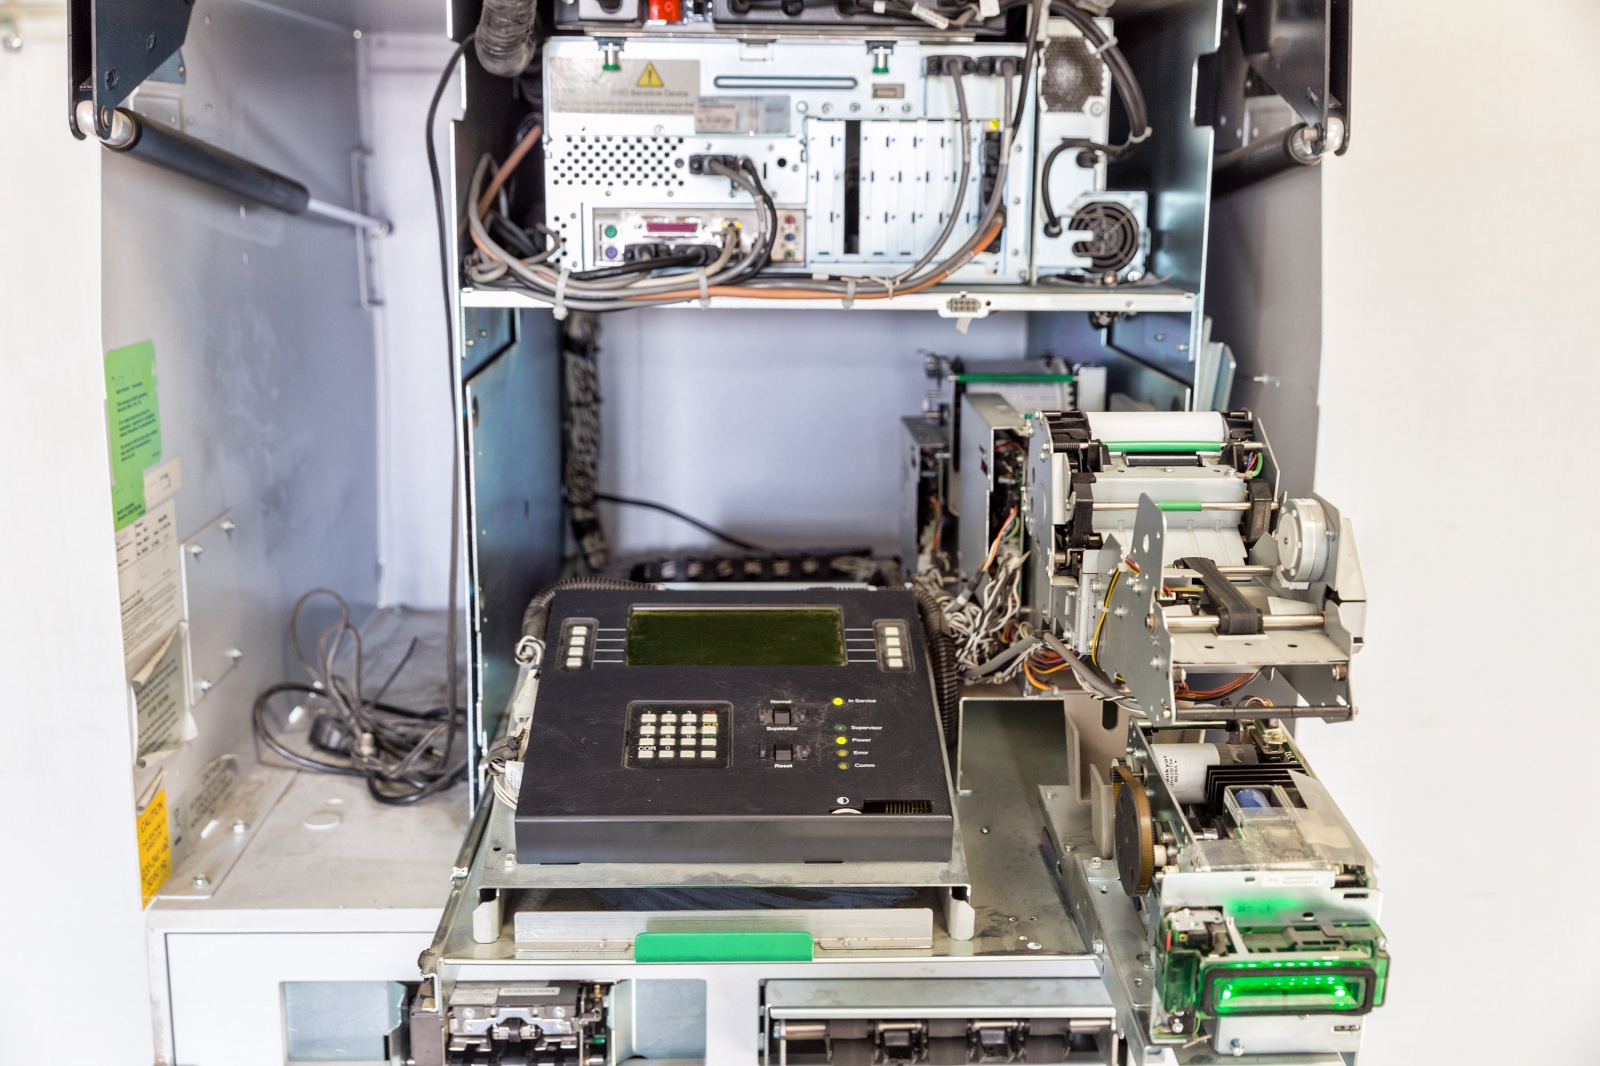 Довольно старый банкомат NCR 6676: наверху системный блок, под ним инженерная панель управления, справа карт-ридер с зелёной подсветкой